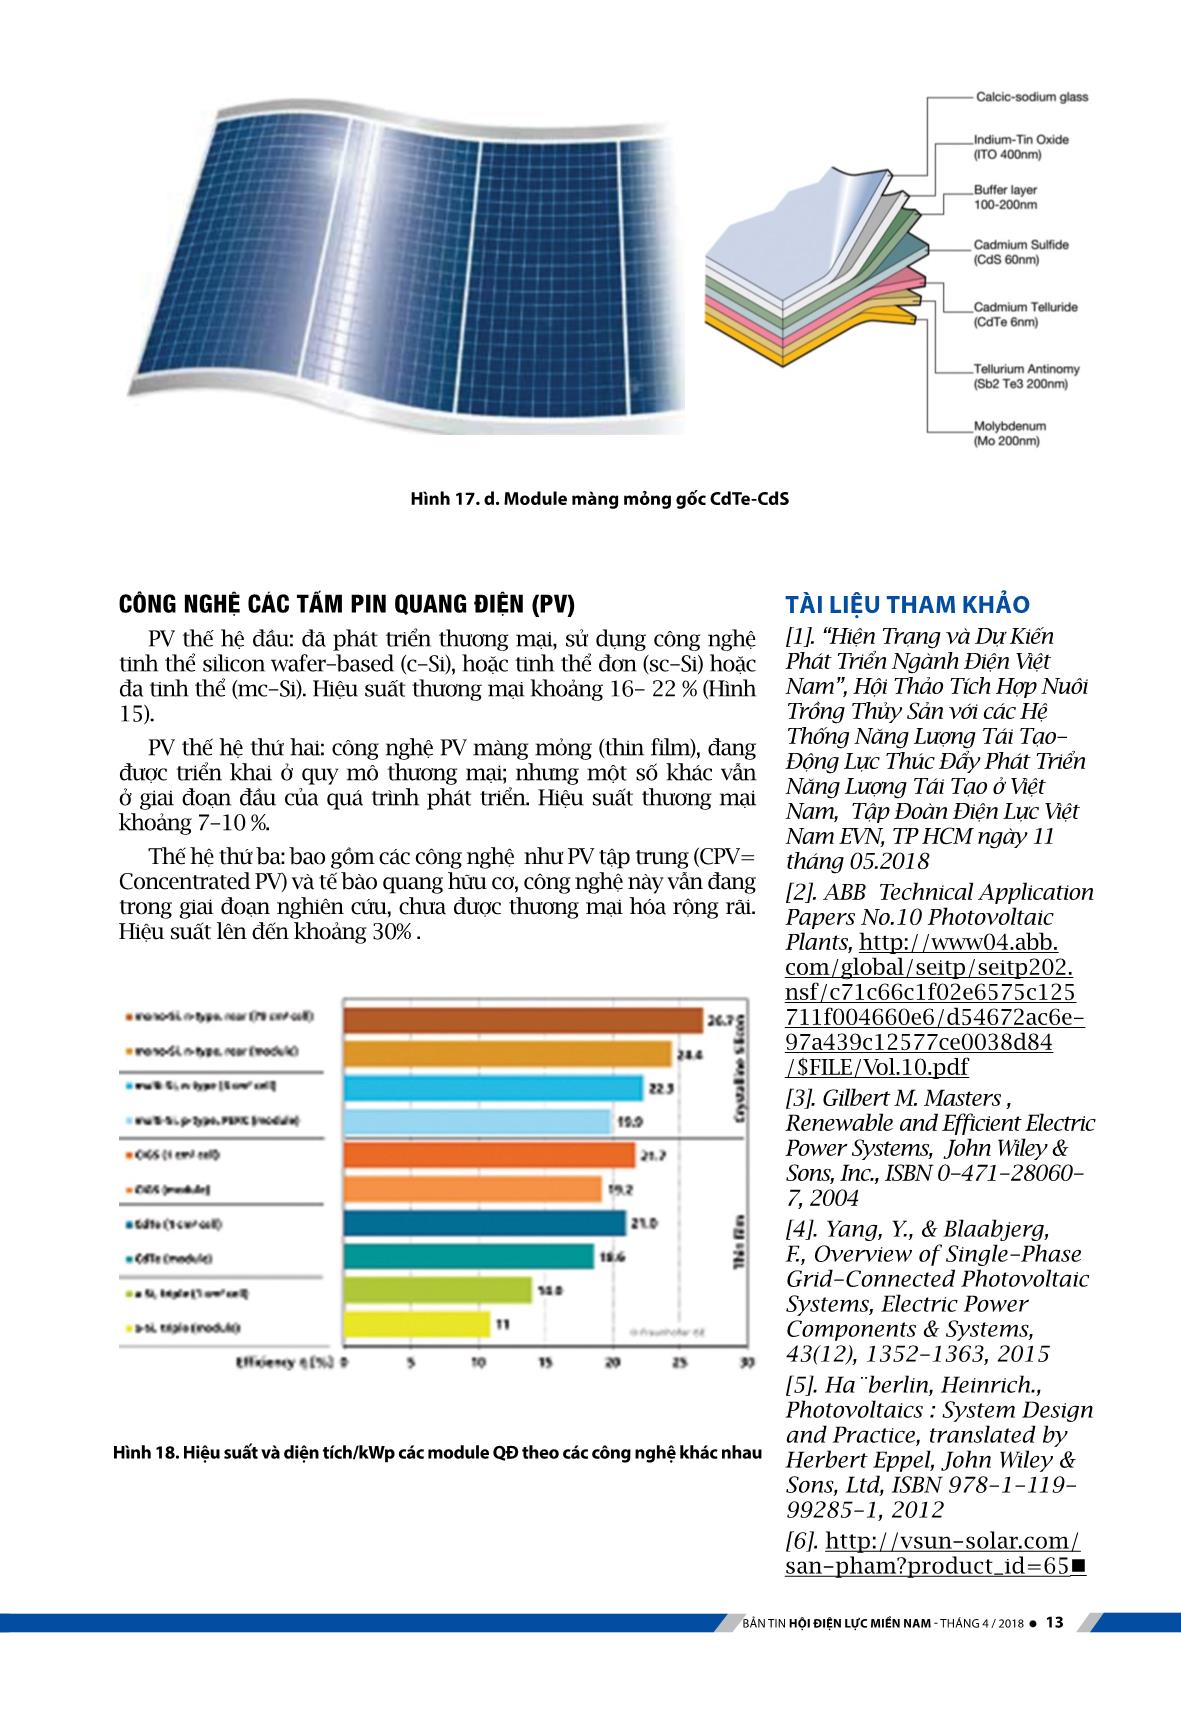 Kỹ thuật hệ thống điện mặt trời với công nghệ quang điện trang 9